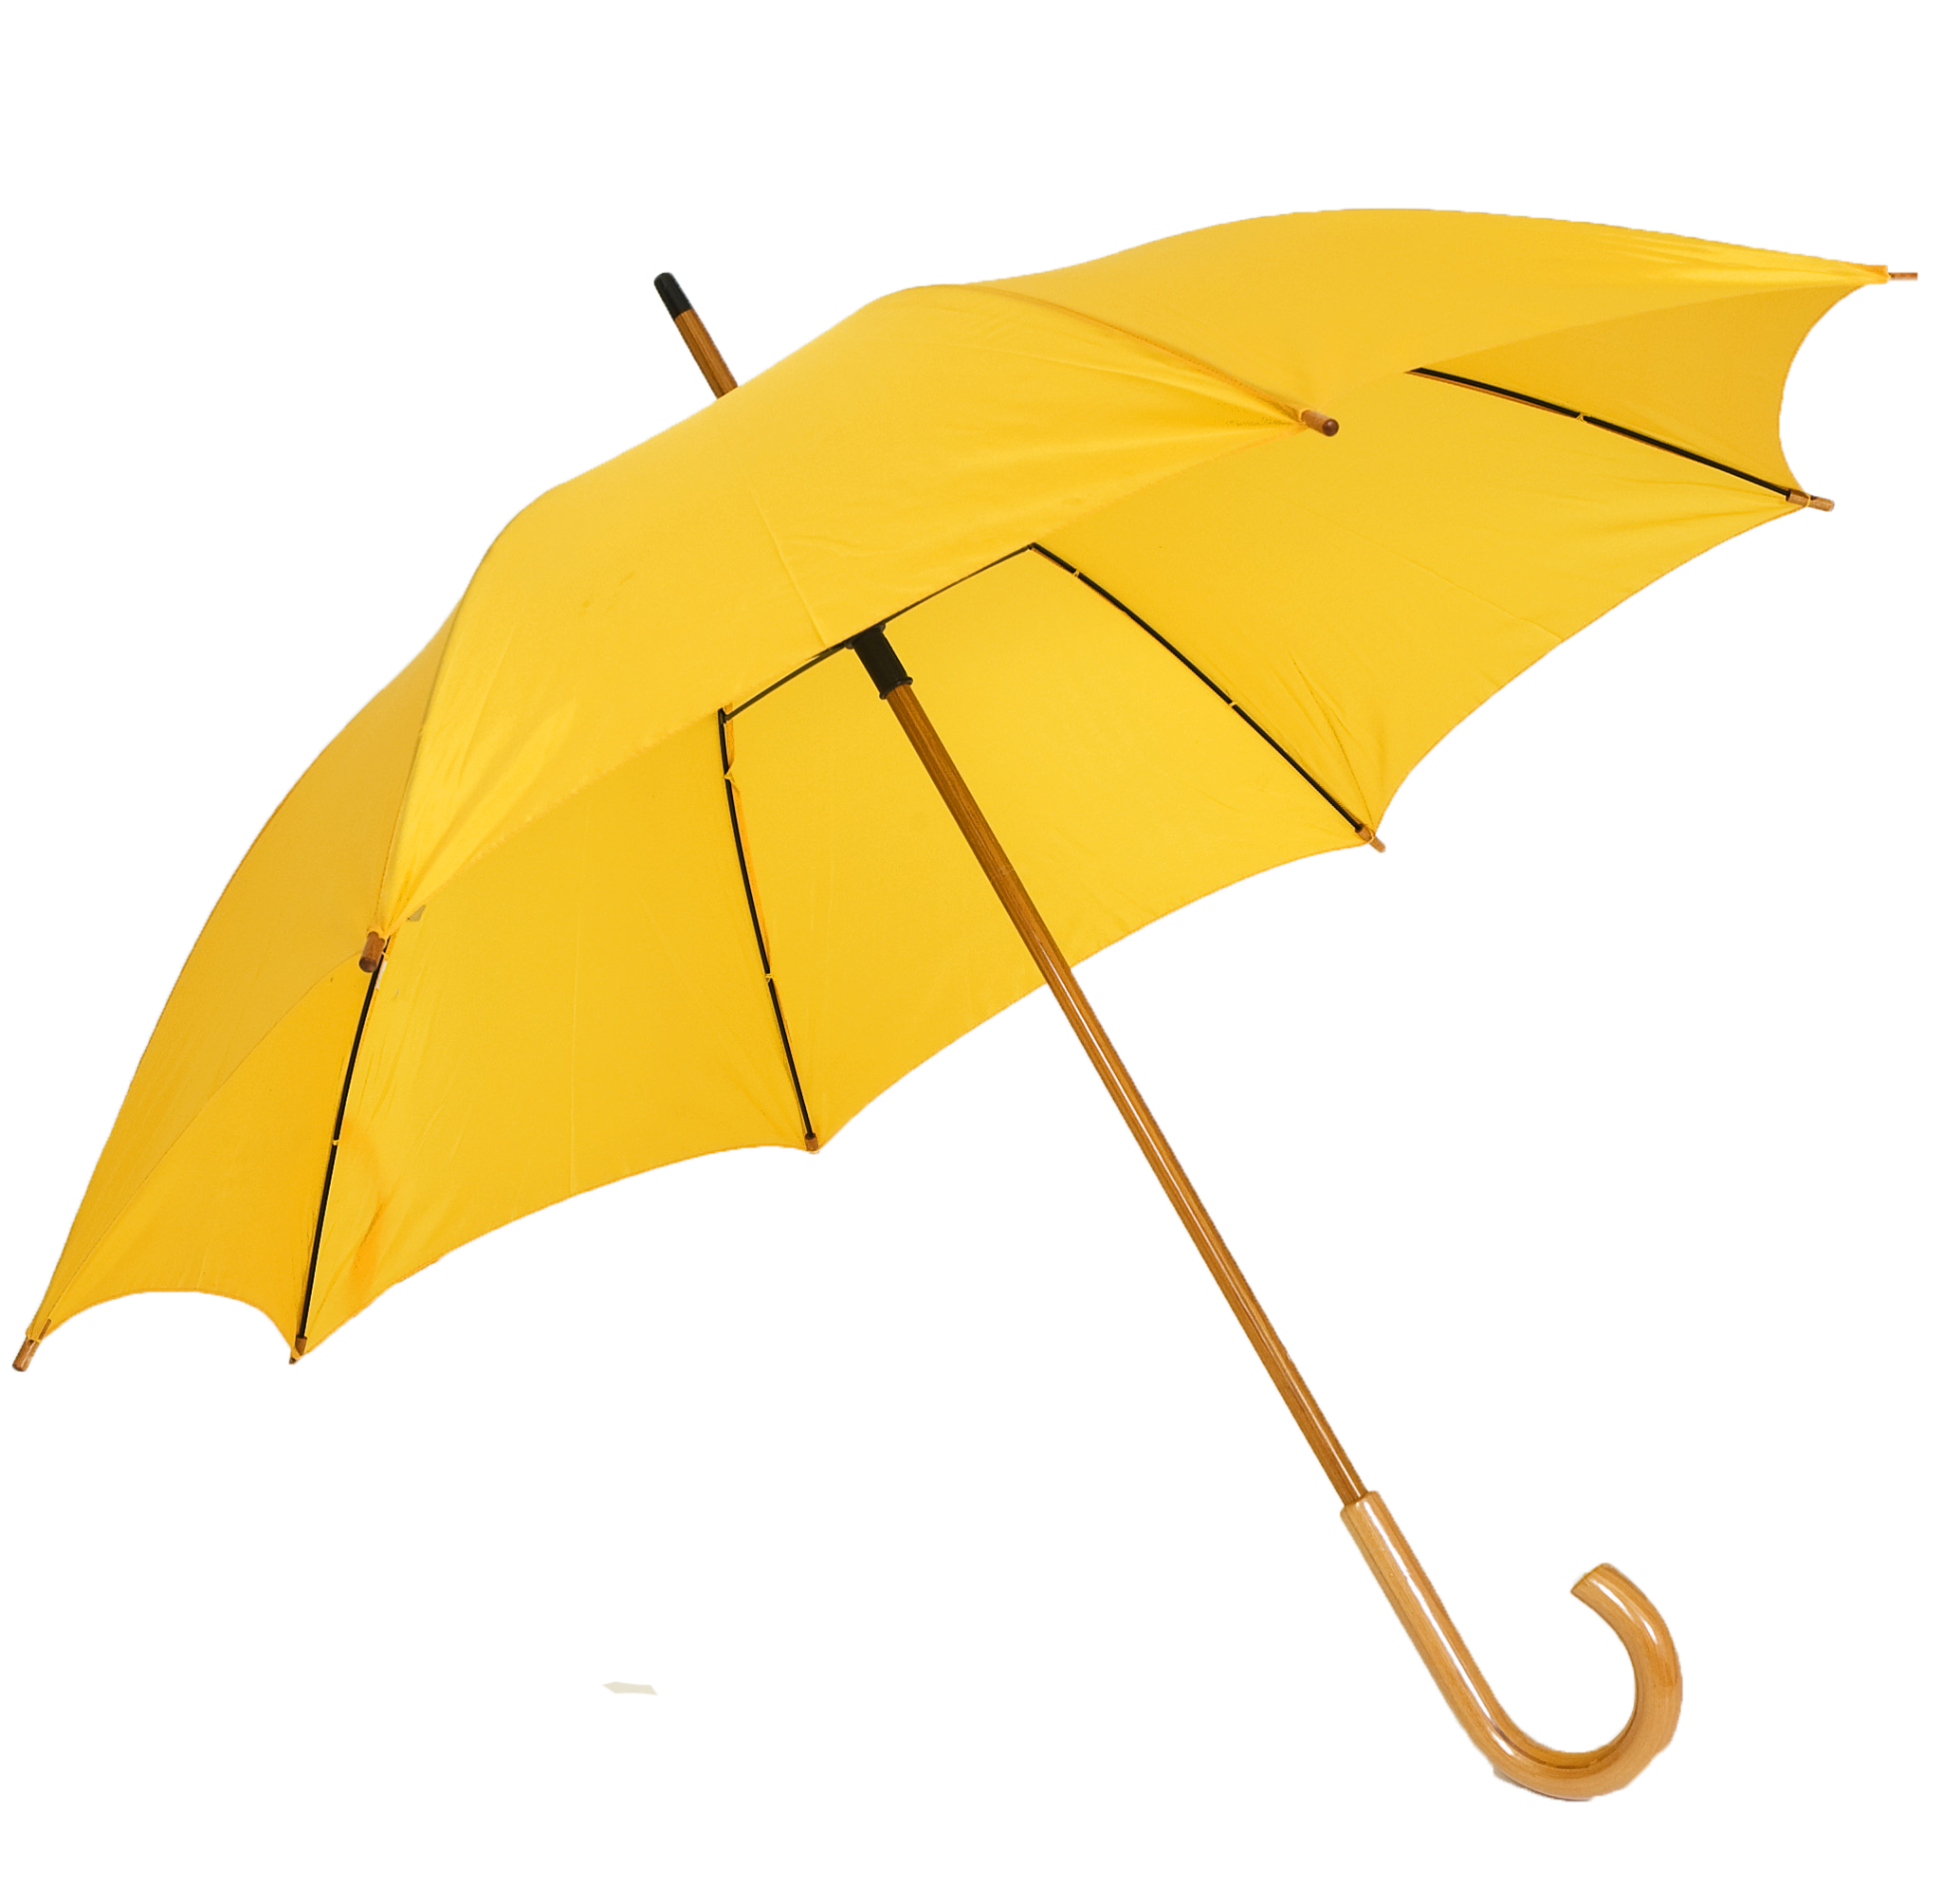 Umbrella PNG Transparent Images | PNG All